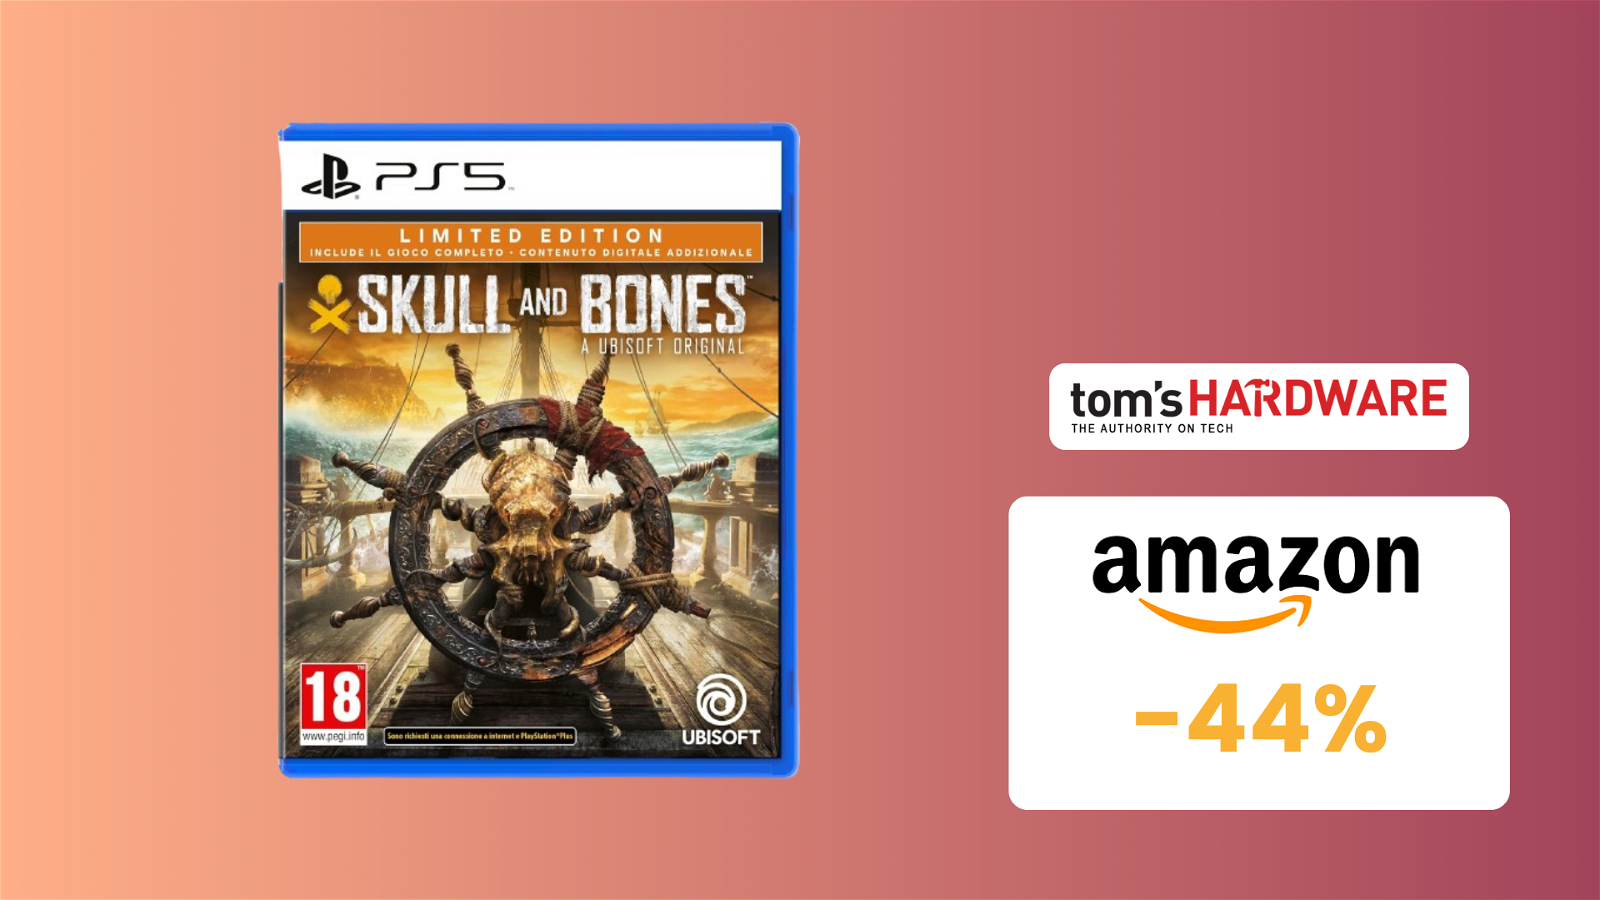 Immagine di SVUOTATUTTO AMAZON: Limited Edition di Skull & Bones PS5 SCONTATA del 44%!